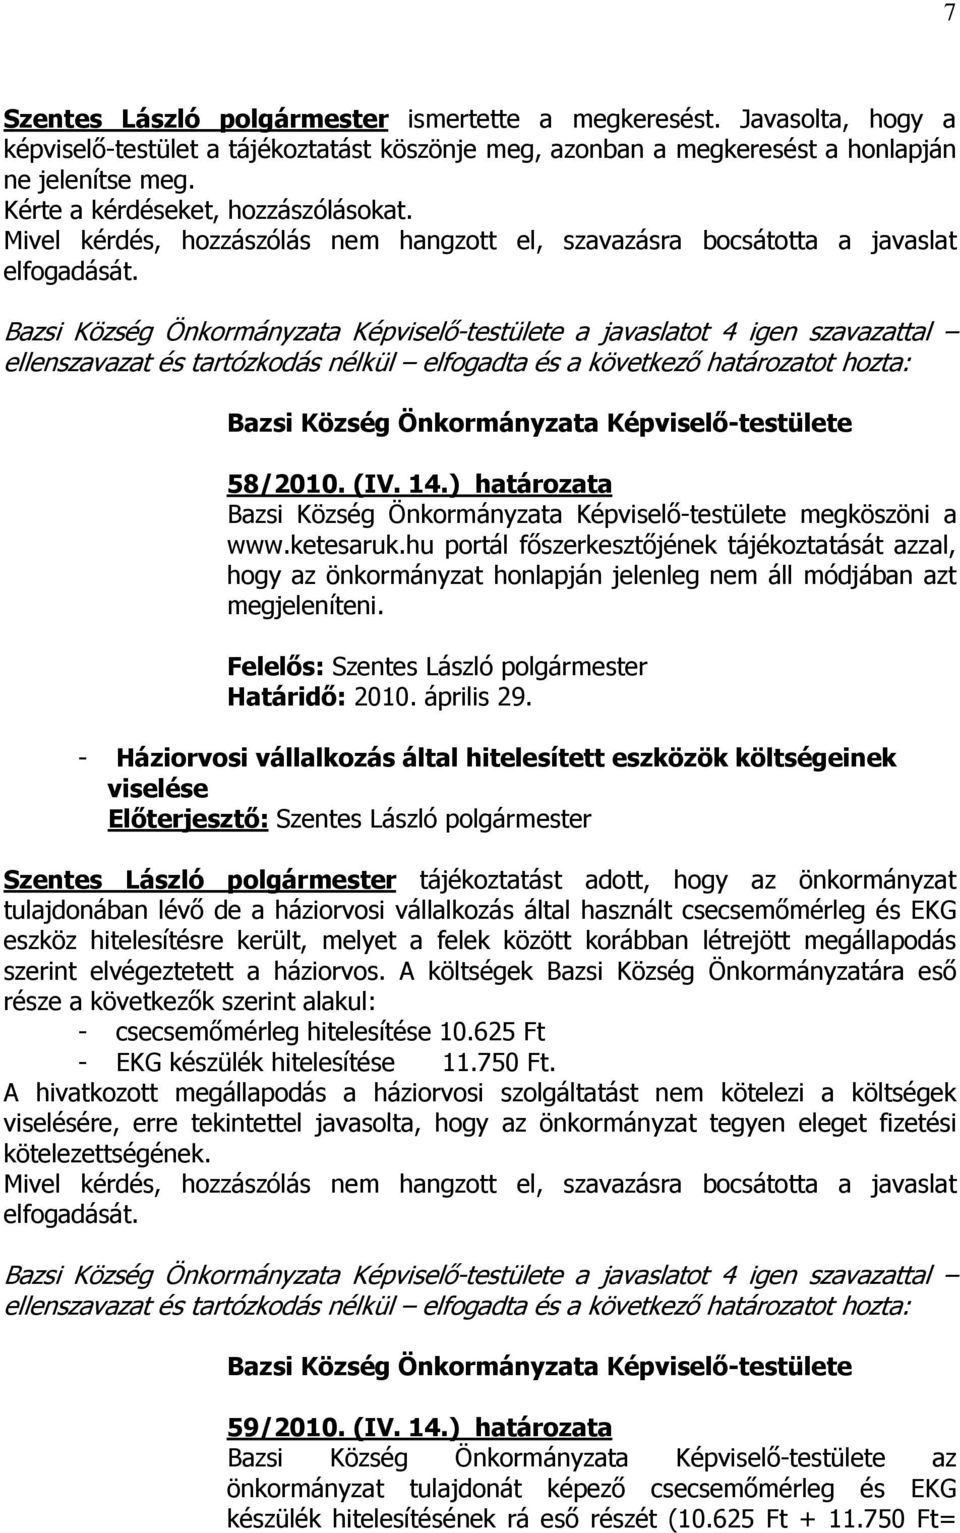 ketesaruk.hu portál fıszerkesztıjének tájékoztatását azzal, hogy az önkormányzat honlapján jelenleg nem áll módjában azt megjeleníteni. Határidı: 2010. április 29.